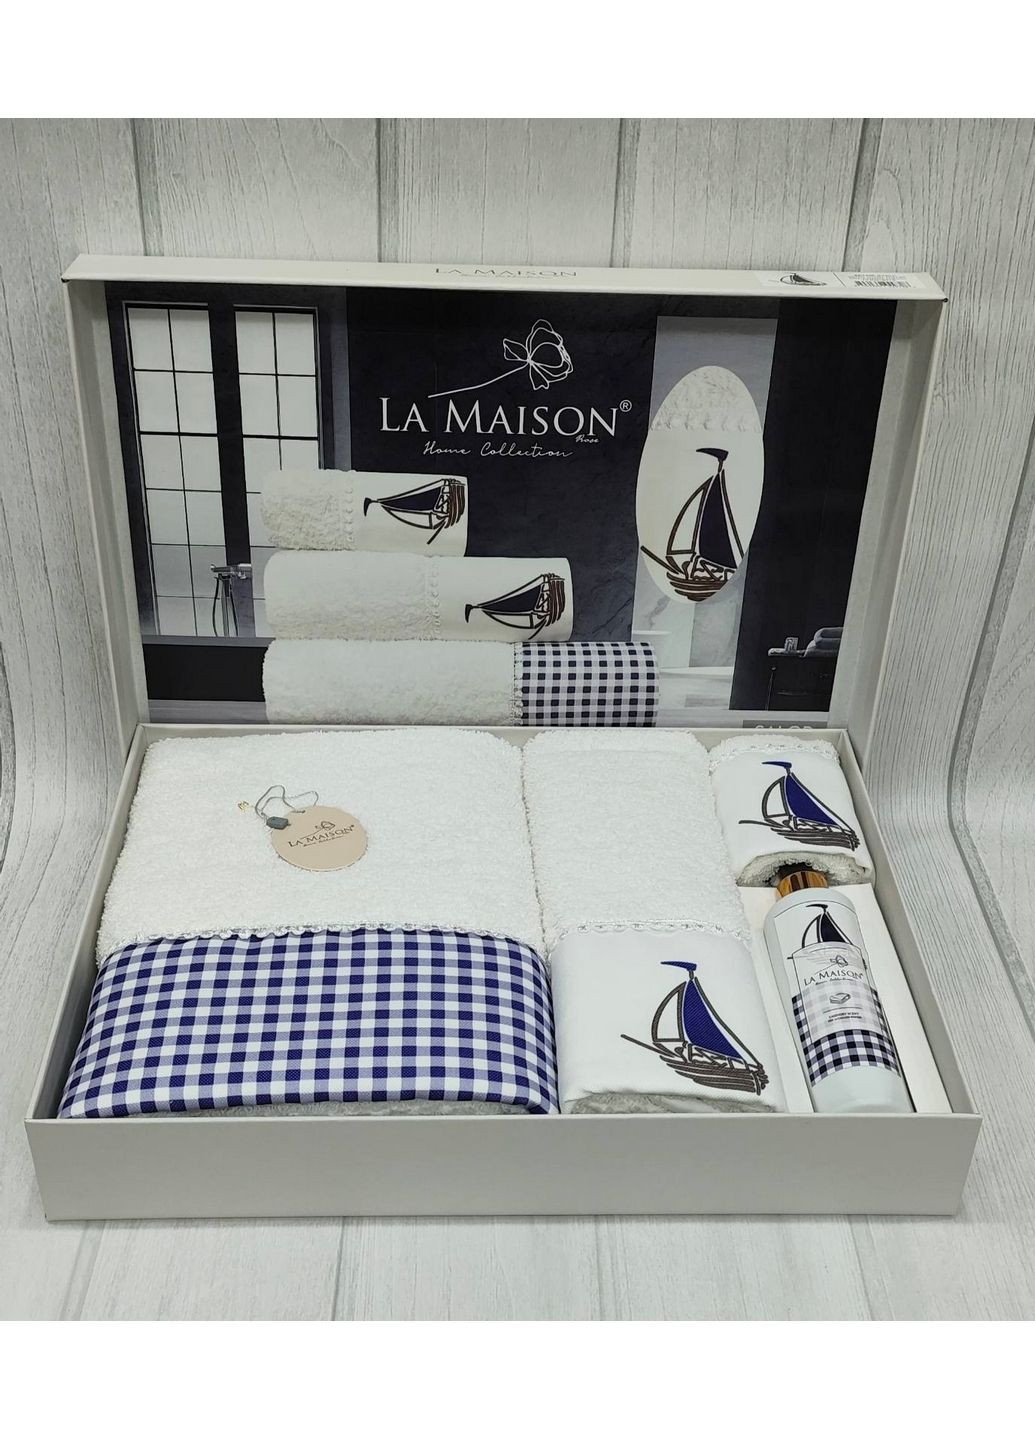 La Maison подарочный комплект полотенец с духами комбинированный производство - Турция